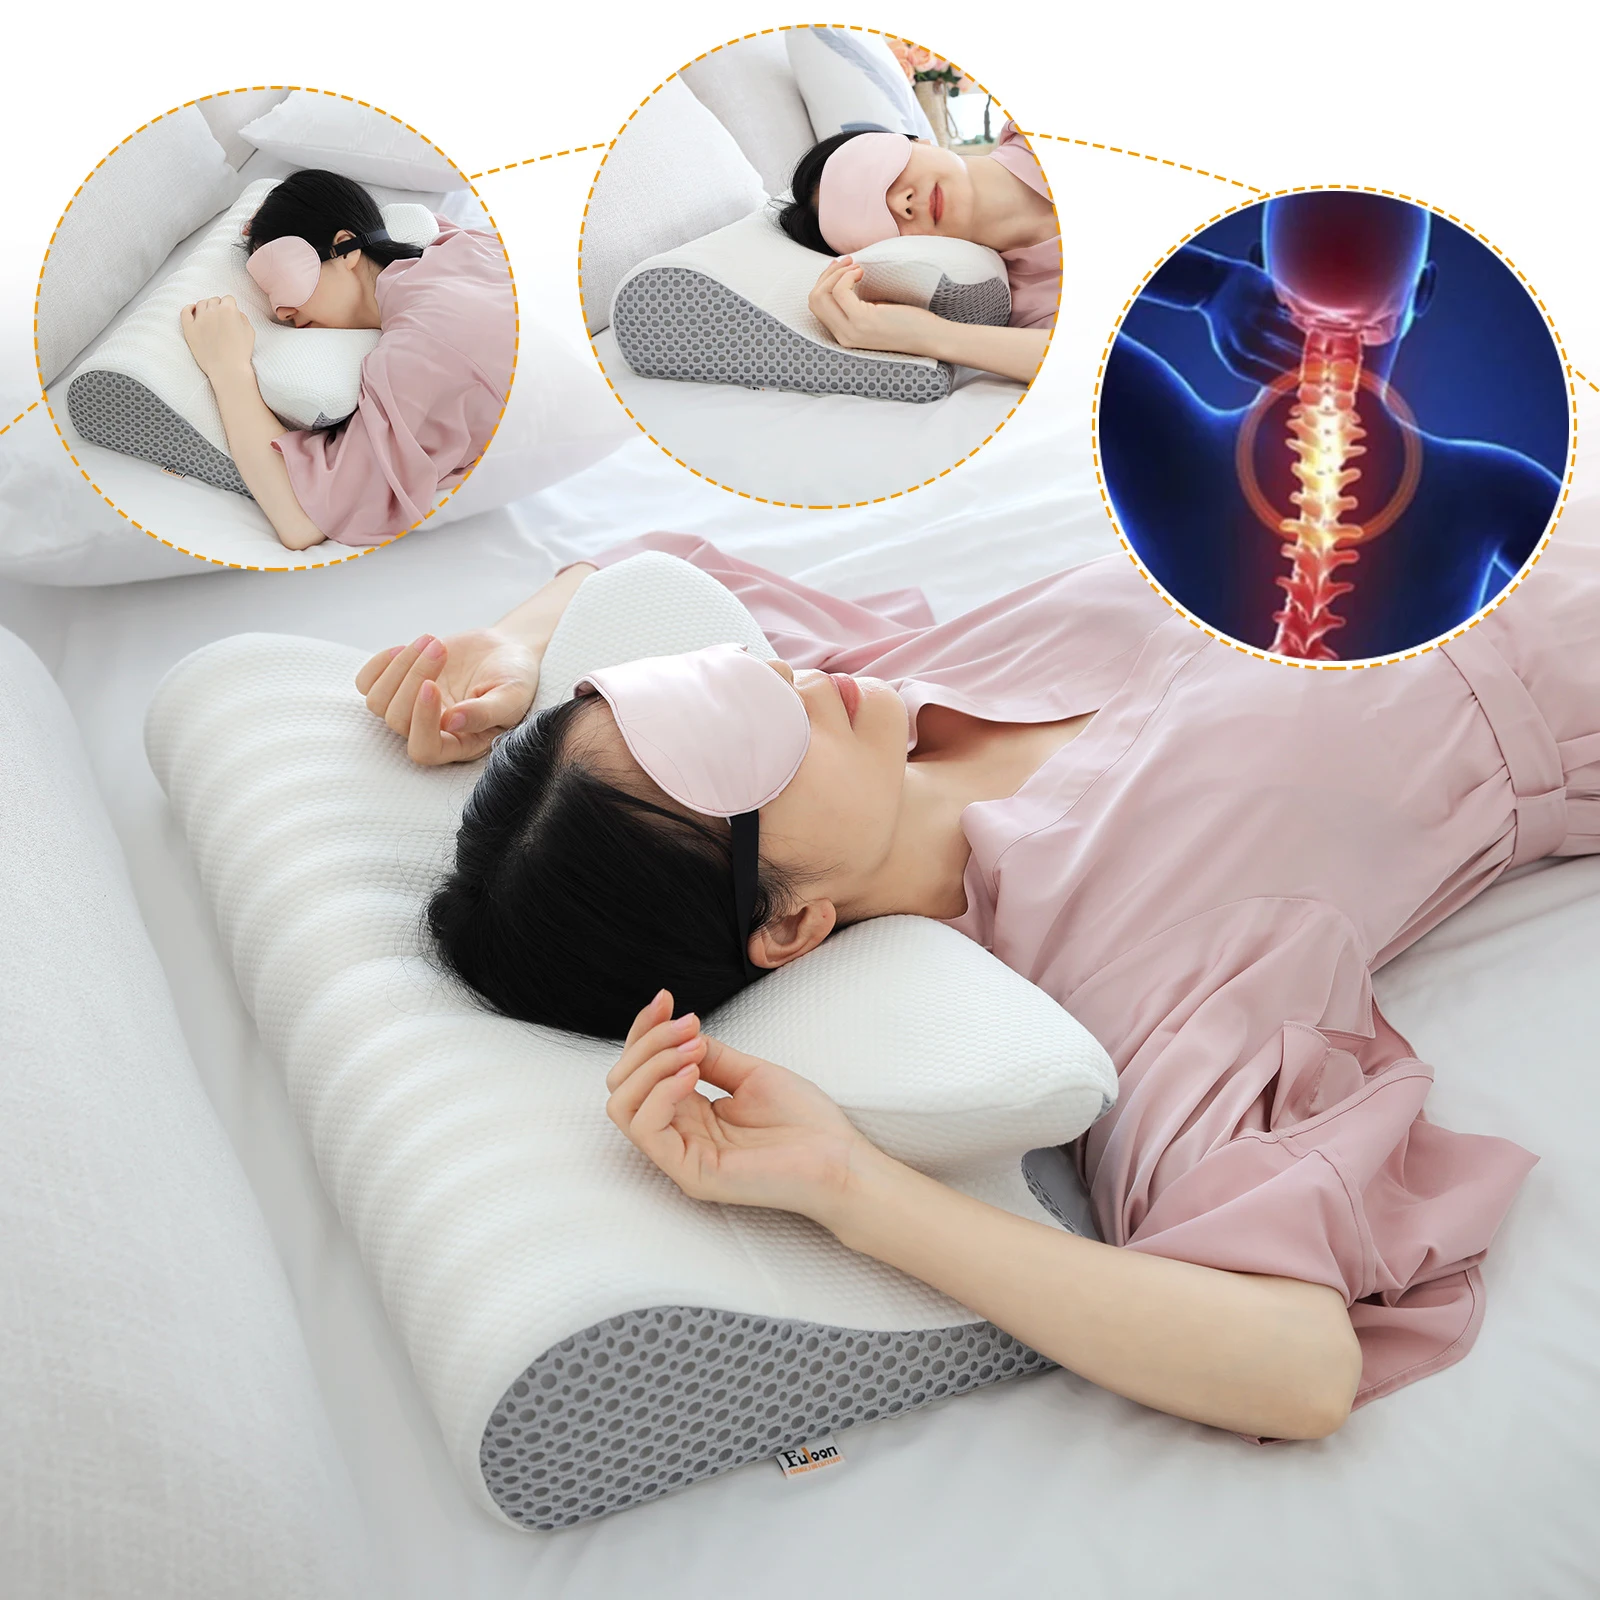 https://ae01.alicdn.com/kf/S2953da122b6b4de9ace25b26f35842d4H/Hot-Contour-Memory-Foam-Cervical-Pillow-Ergonomic-Orthopedic-Neck-Pain-Pillow-for-Side-Back-Stomach-Sleeper.jpg